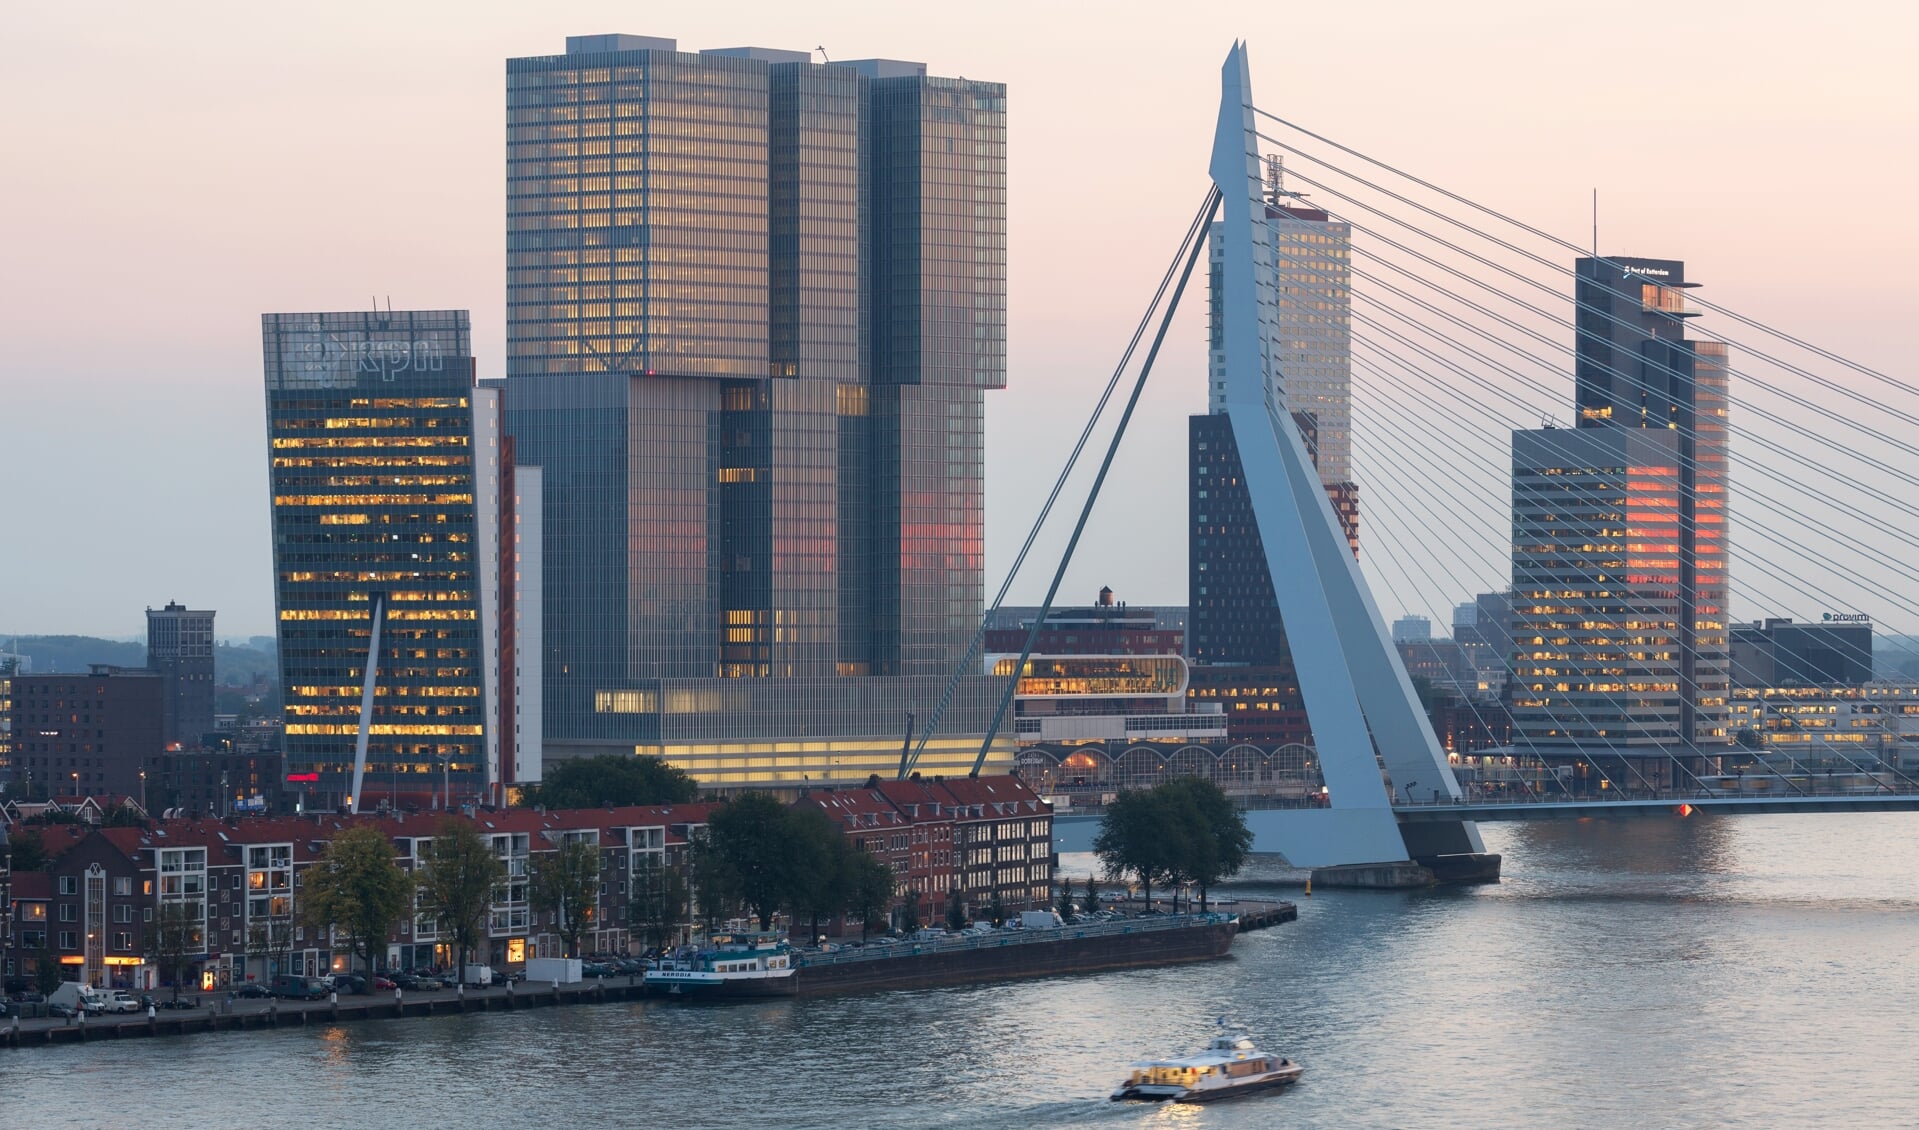 Meer dan 25 jaar na de opening van de Erasmusbrug wil de gemeente Rotterdam een nieuwe brug. Foto: Ossip van Duivenbode/Make it Happen